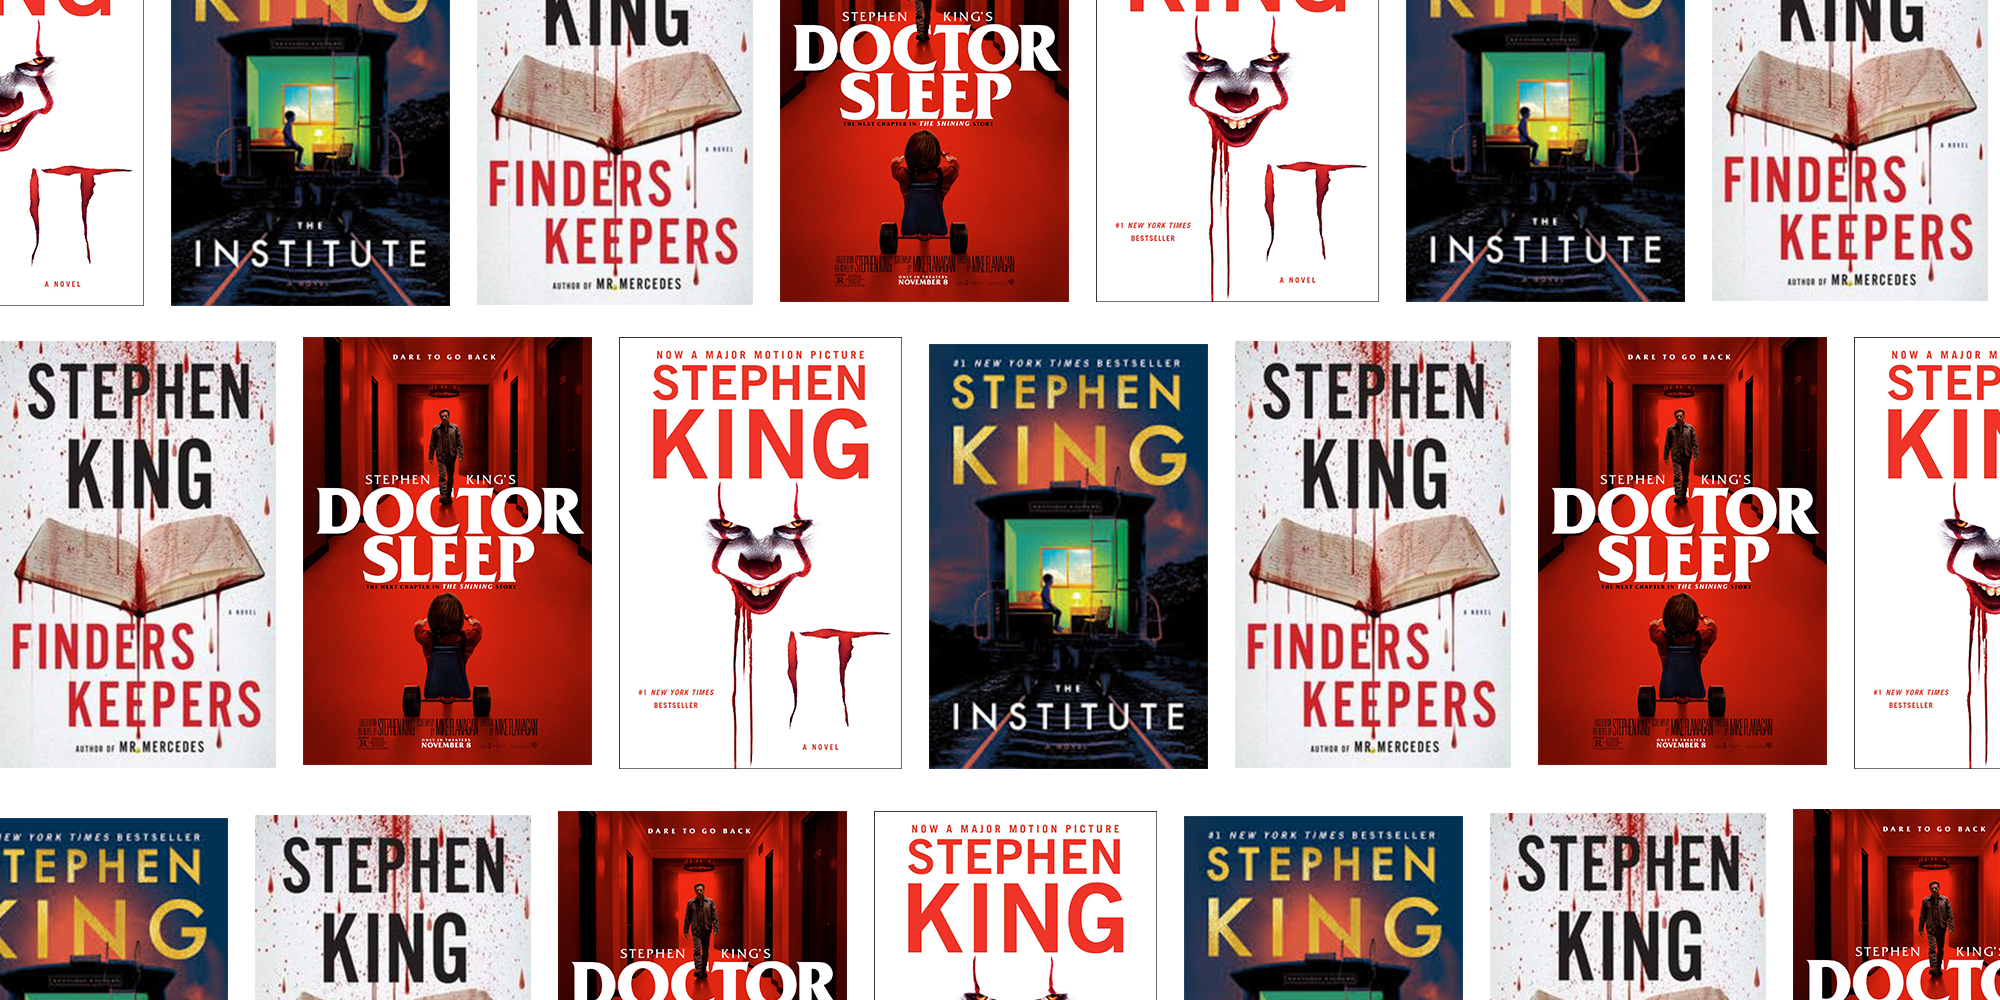 Best Stephen King Books